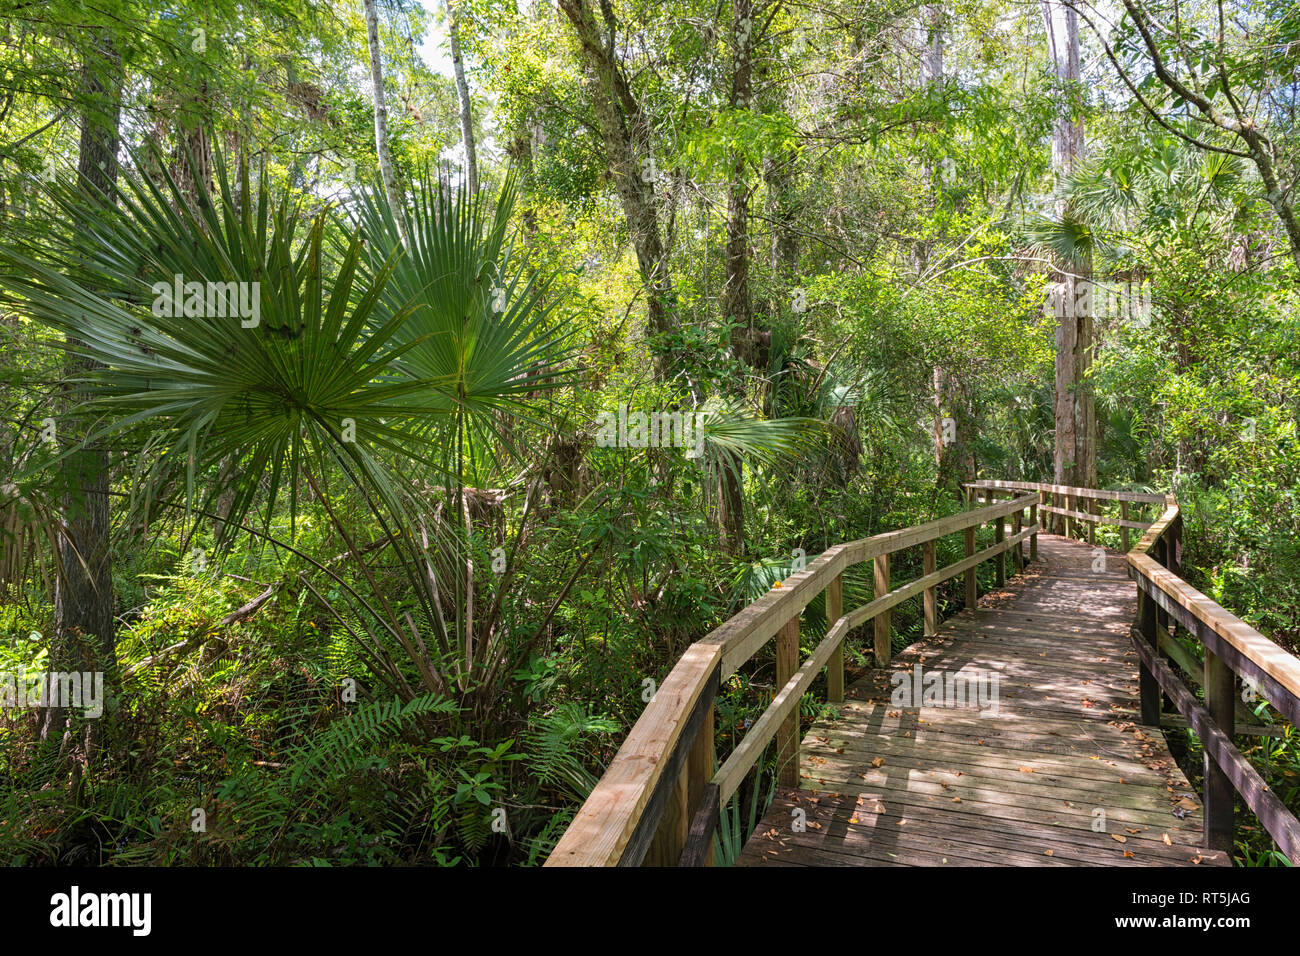 États-unis d'Amérique, Floride, Everglades, Copeland, promenade à travers un marais dans le Fakahatchee Strand State Preserve Park Banque D'Images